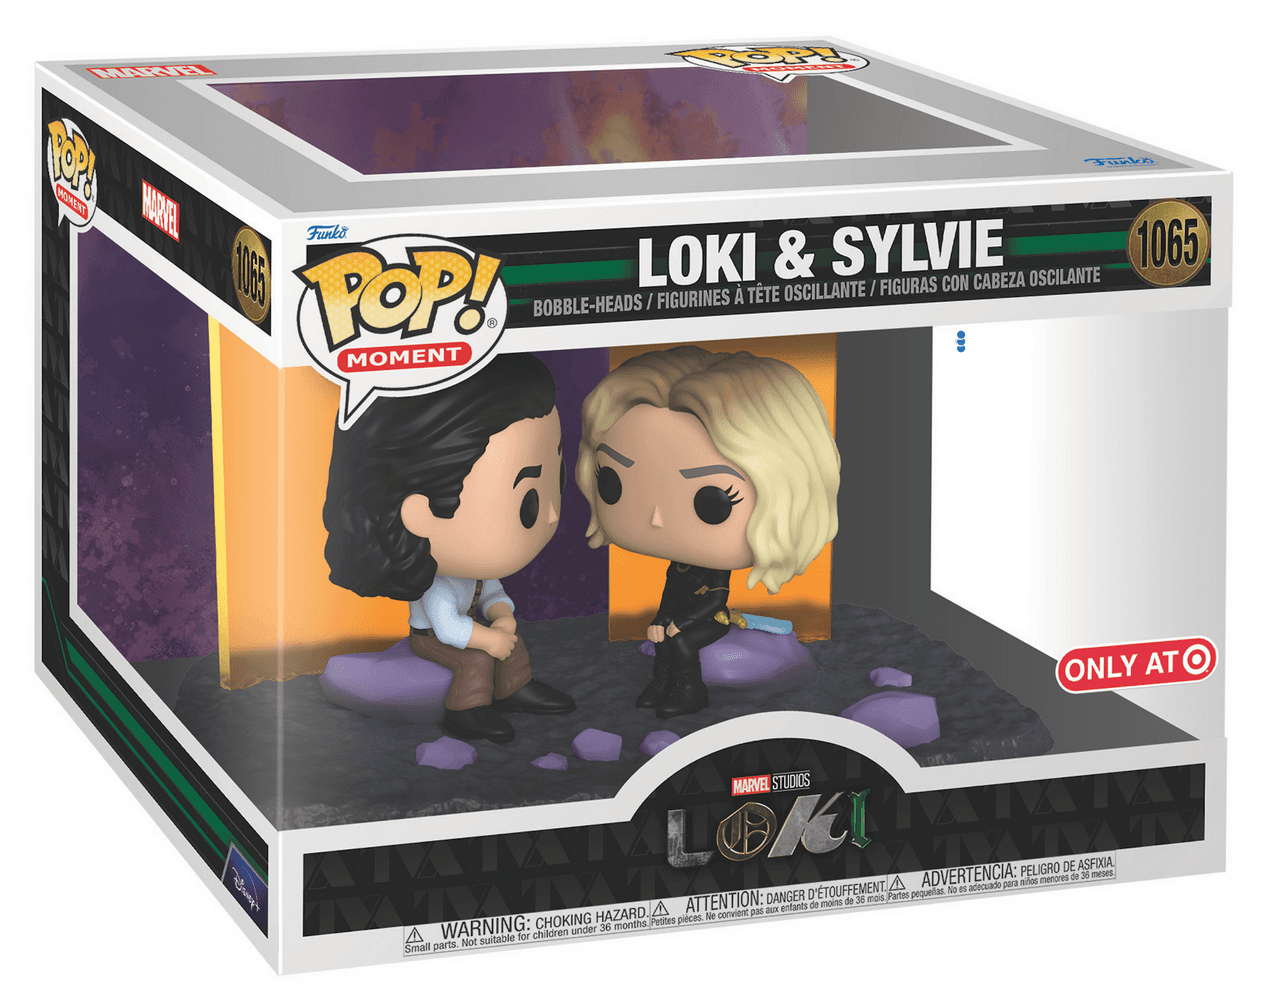 Loki & Sylvie